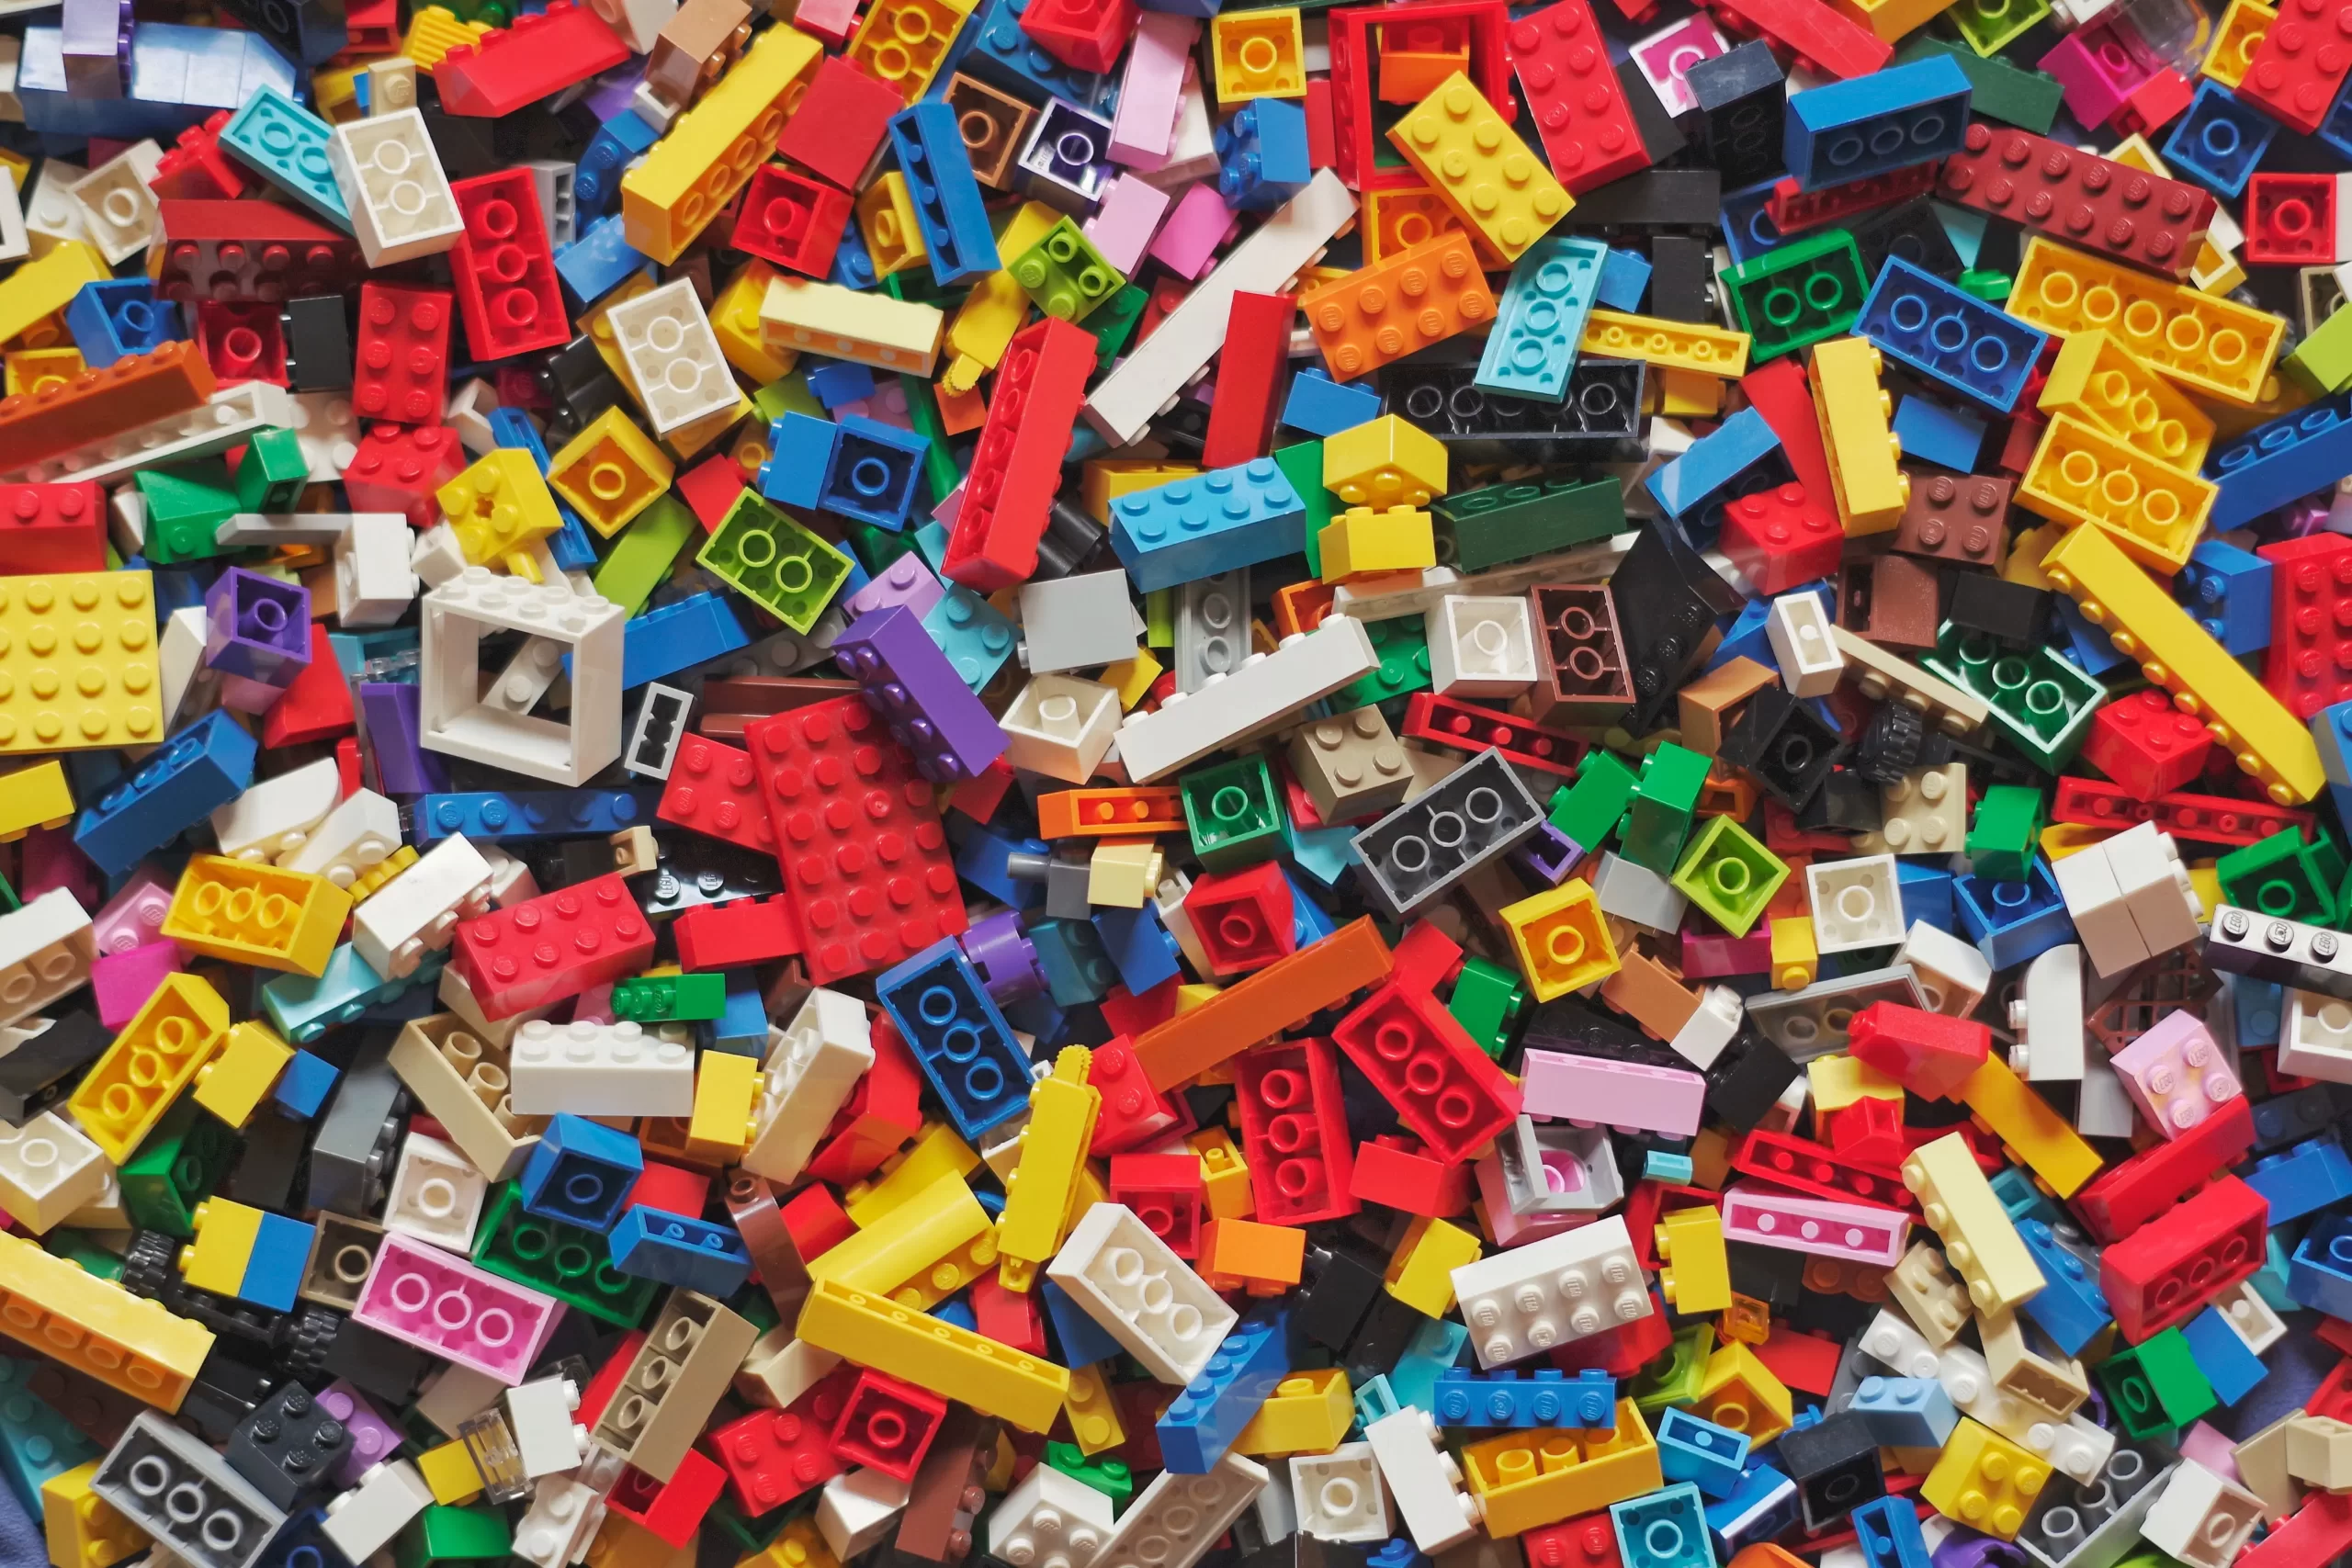 Mattoncini Lego® sfusi al kg - The Brick Family